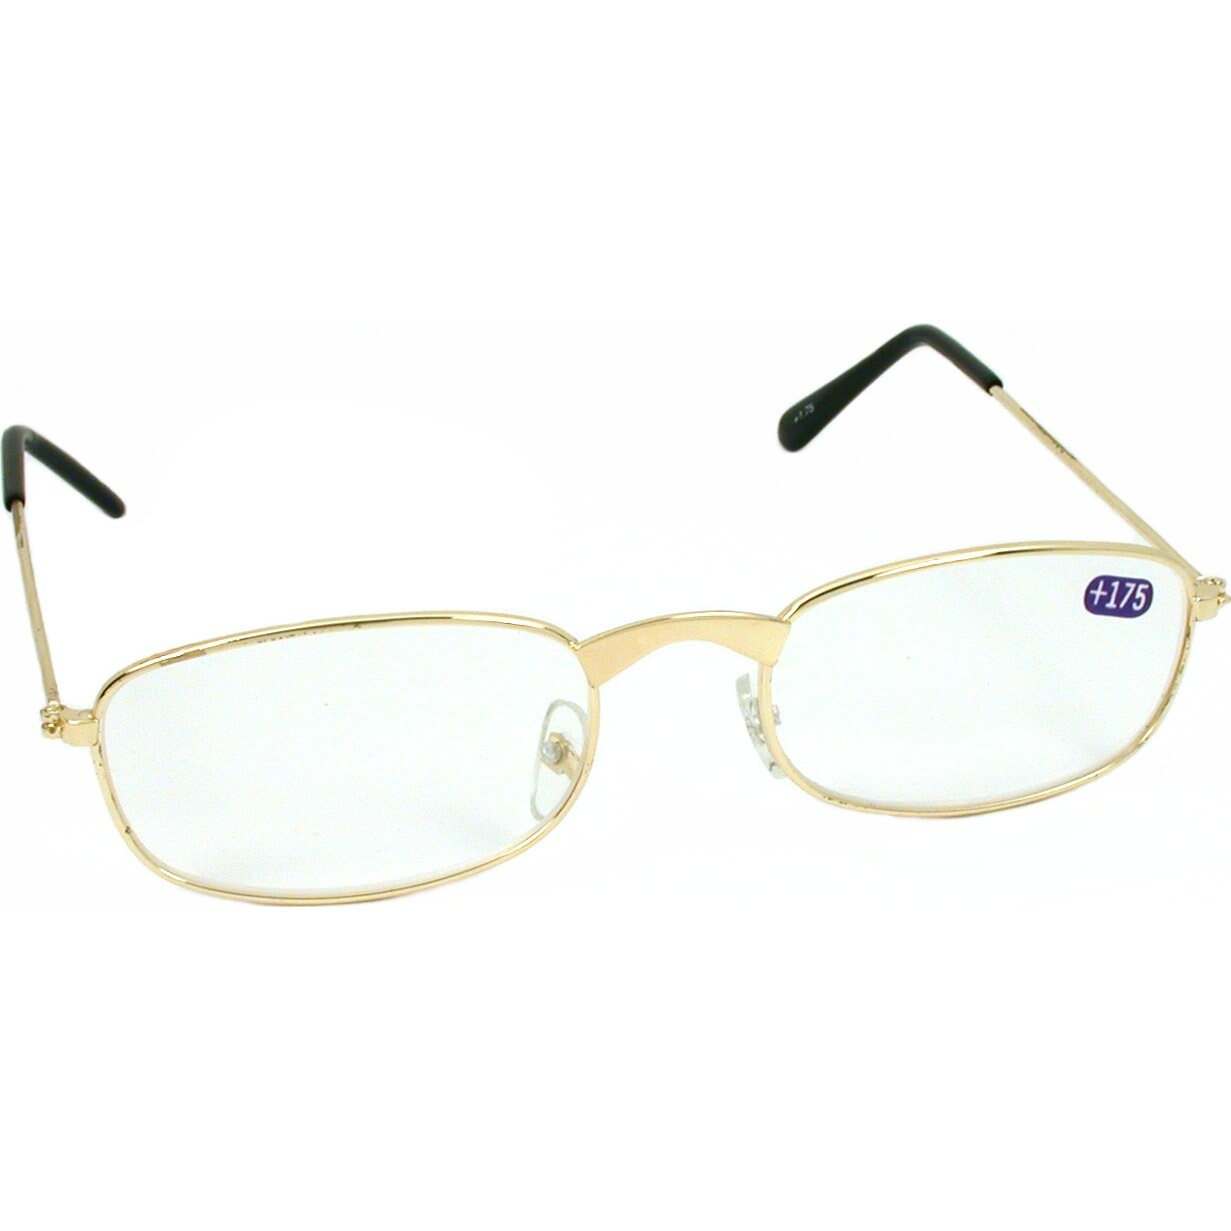 1.75 Reading Eye Glasses Magnifier Gold Color Frame | Michaels